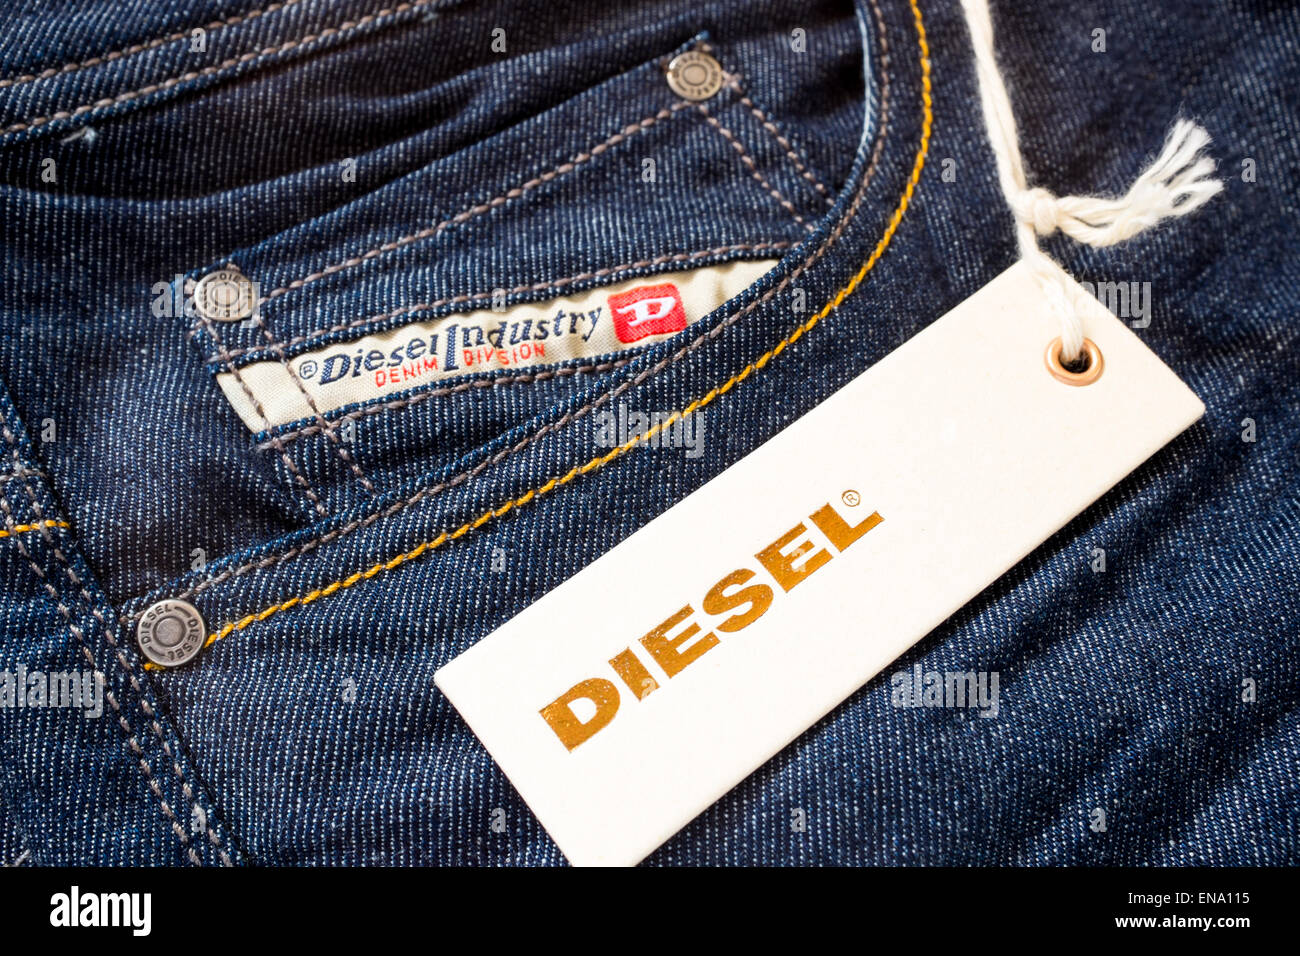 Diesel Clothing Wallpaper